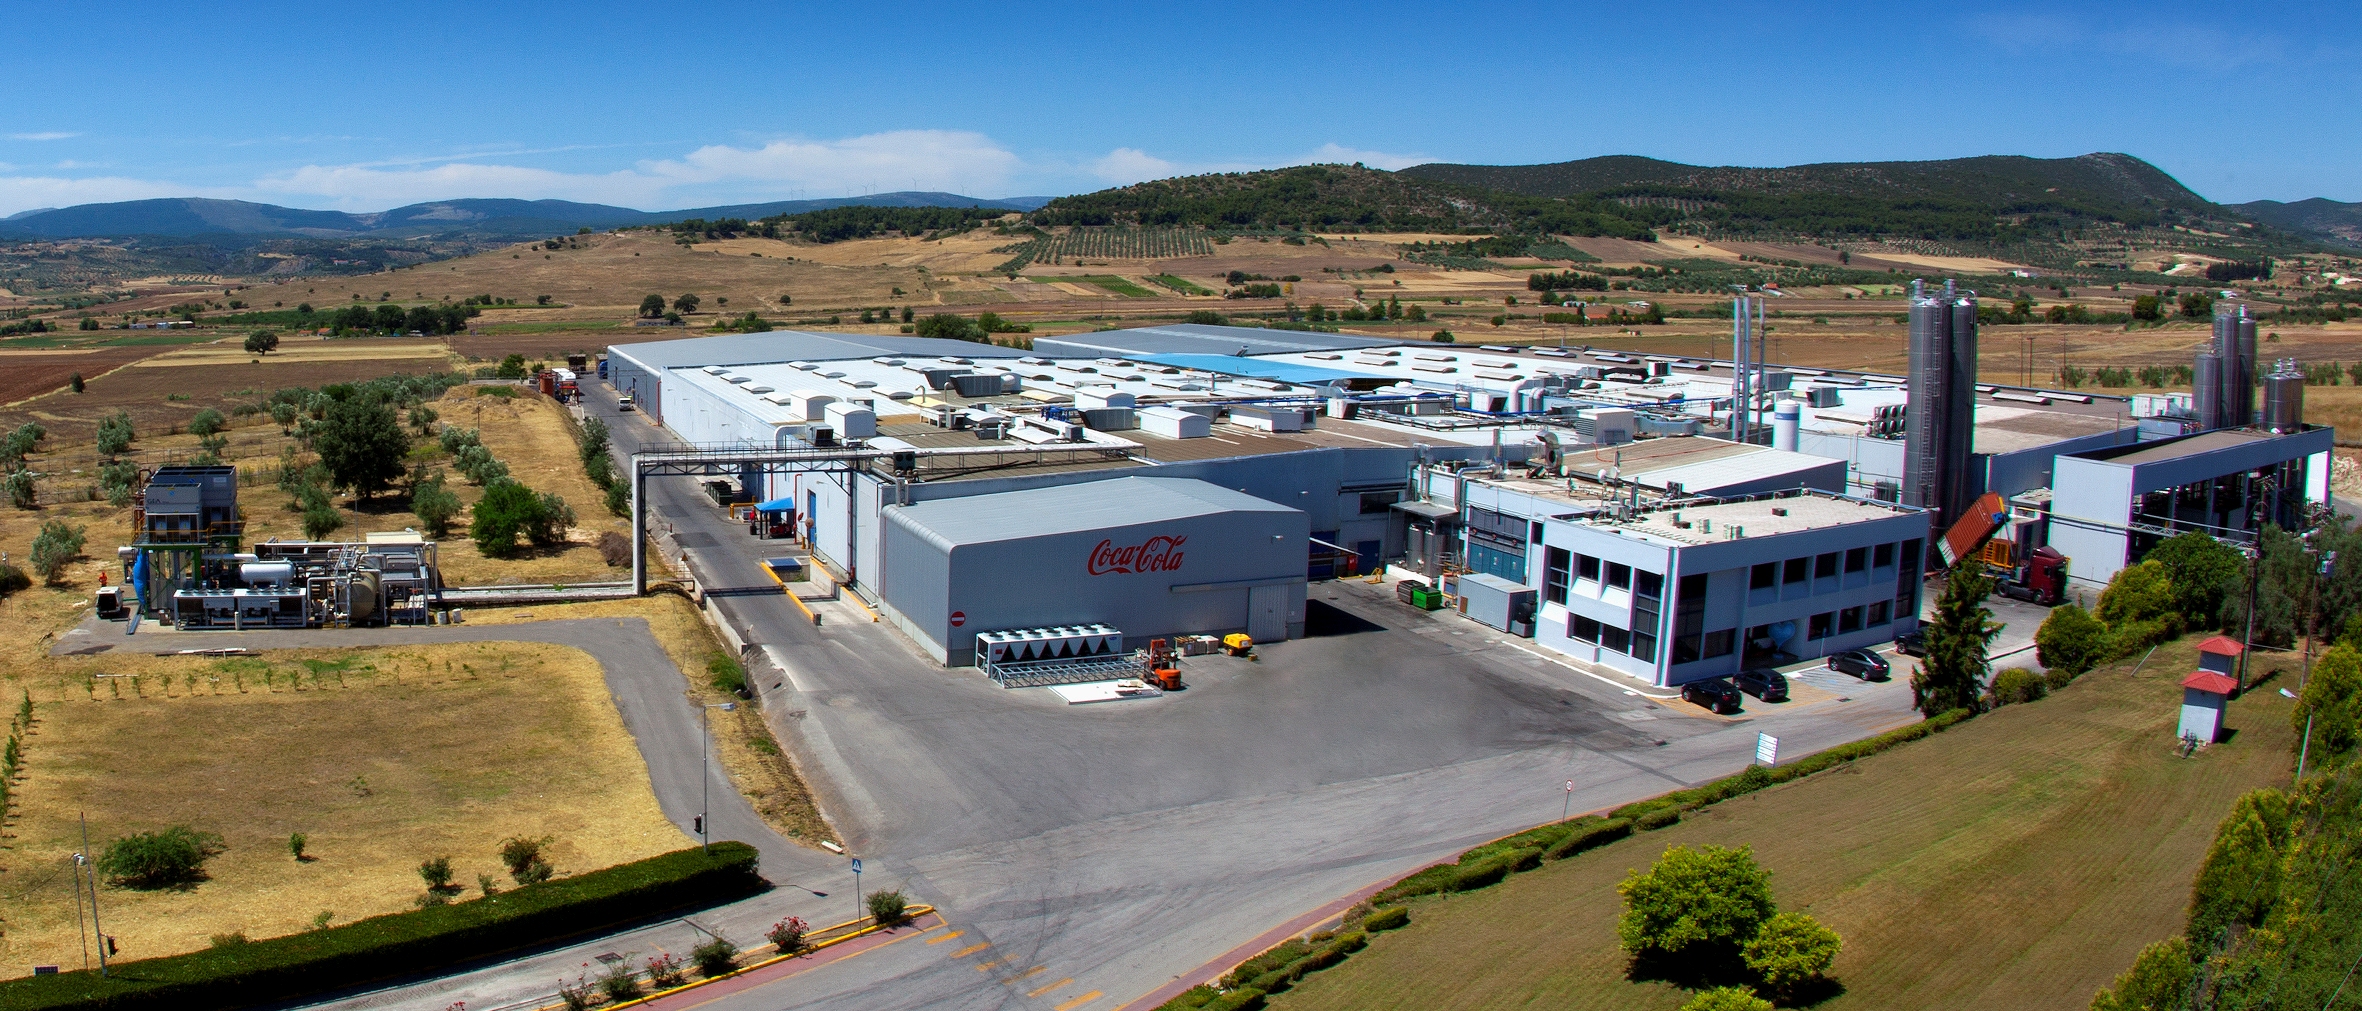 Σχηματάρι Mega-Plant: Το μεγαλύτερο ελληνικό εργοστάσιο αναψυκτικών και χυμών 